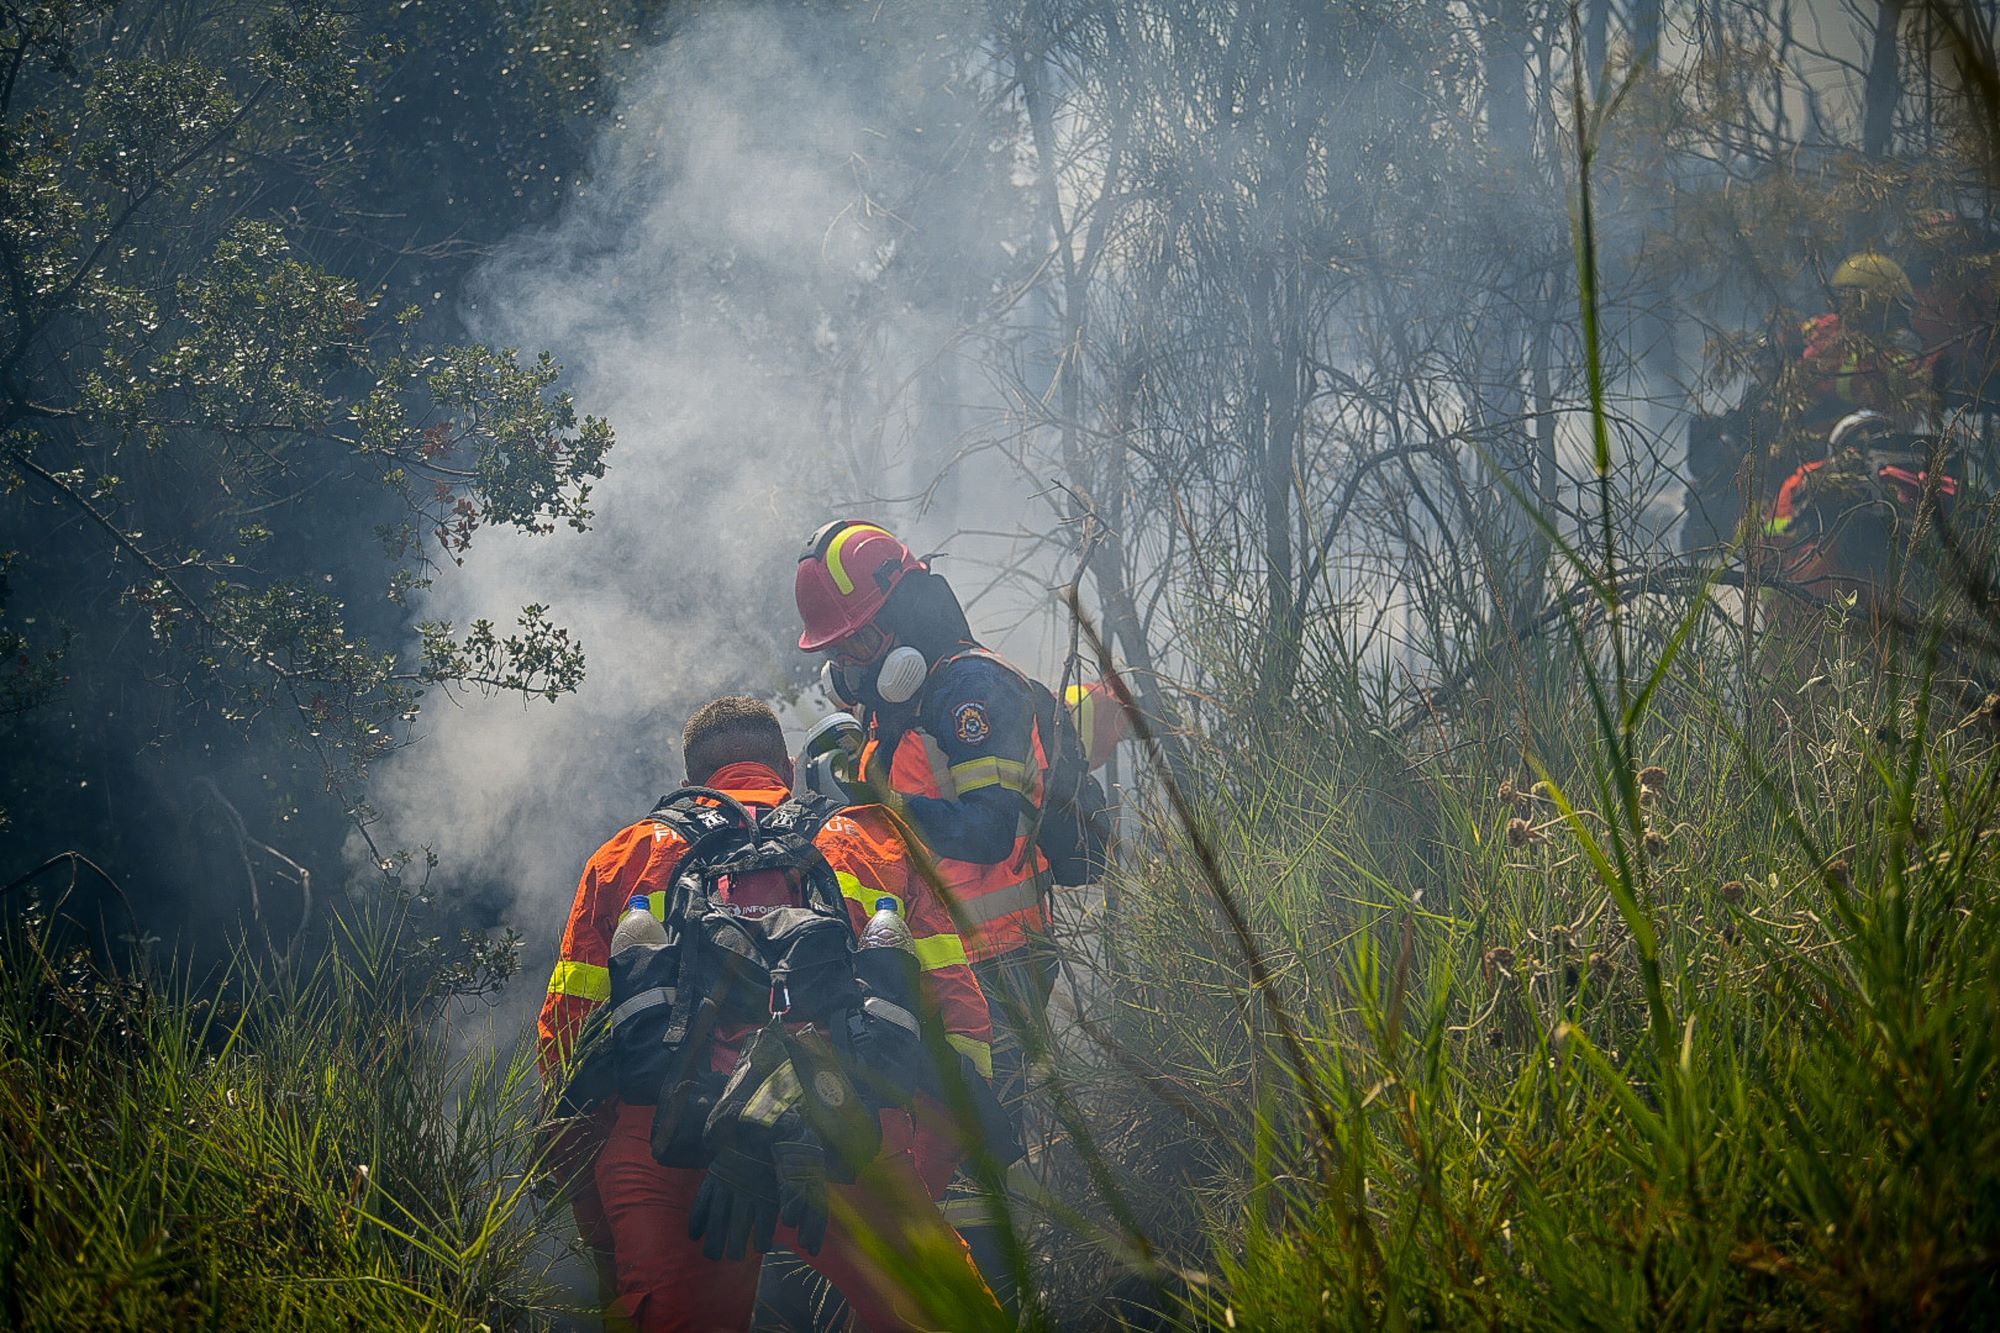 Μάνη: Φωτιά σε χαμηλή βλάστηση νότια του οικισμού Πάλιρος